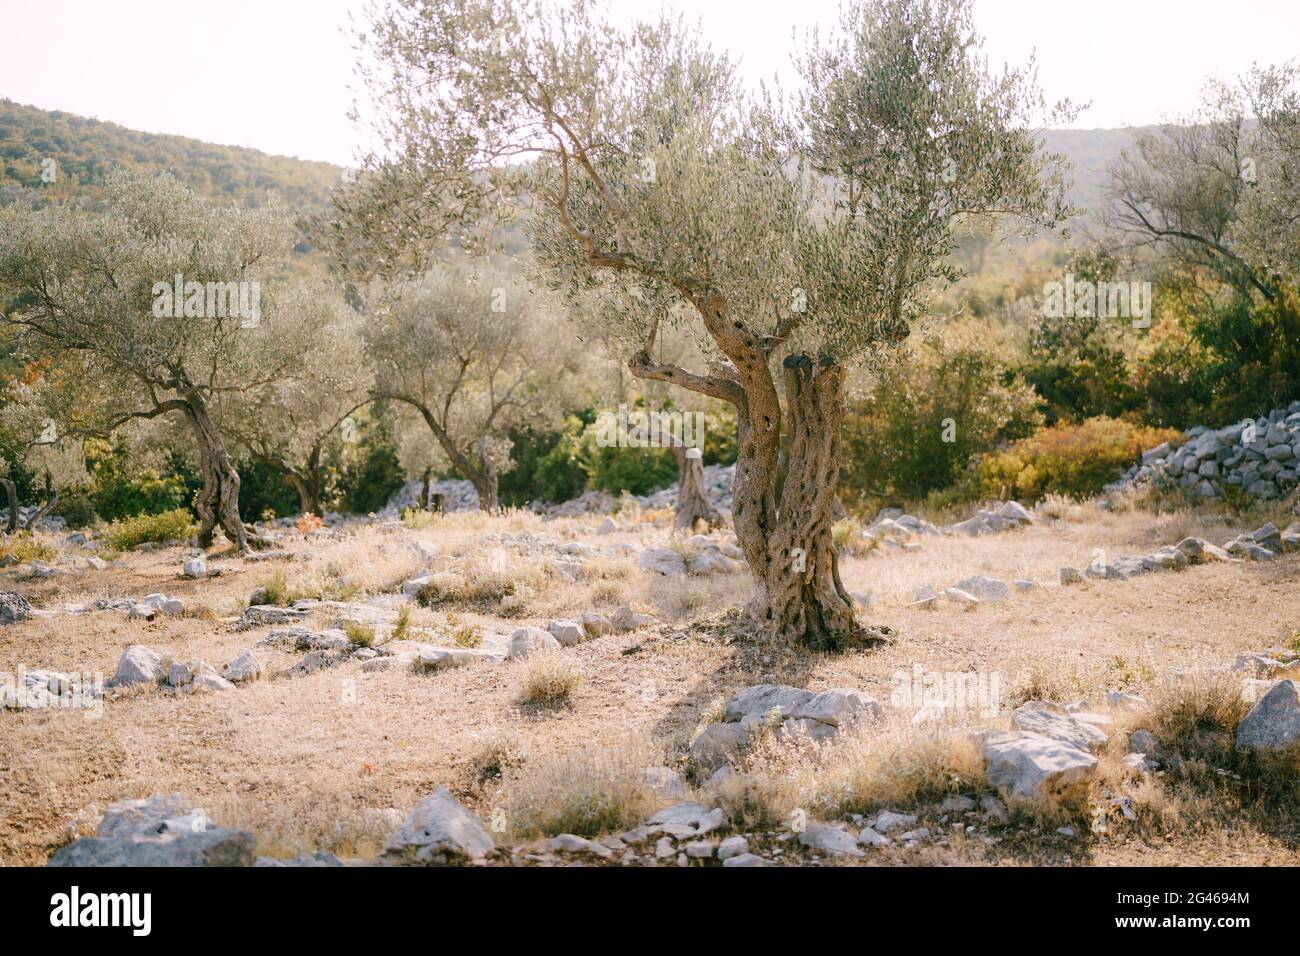 Un vieux olivier dans une plantation à plusieurs étages sur une colline, parmi les pierres remplies de lumière chaude de coucher de soleil. Banque D'Images